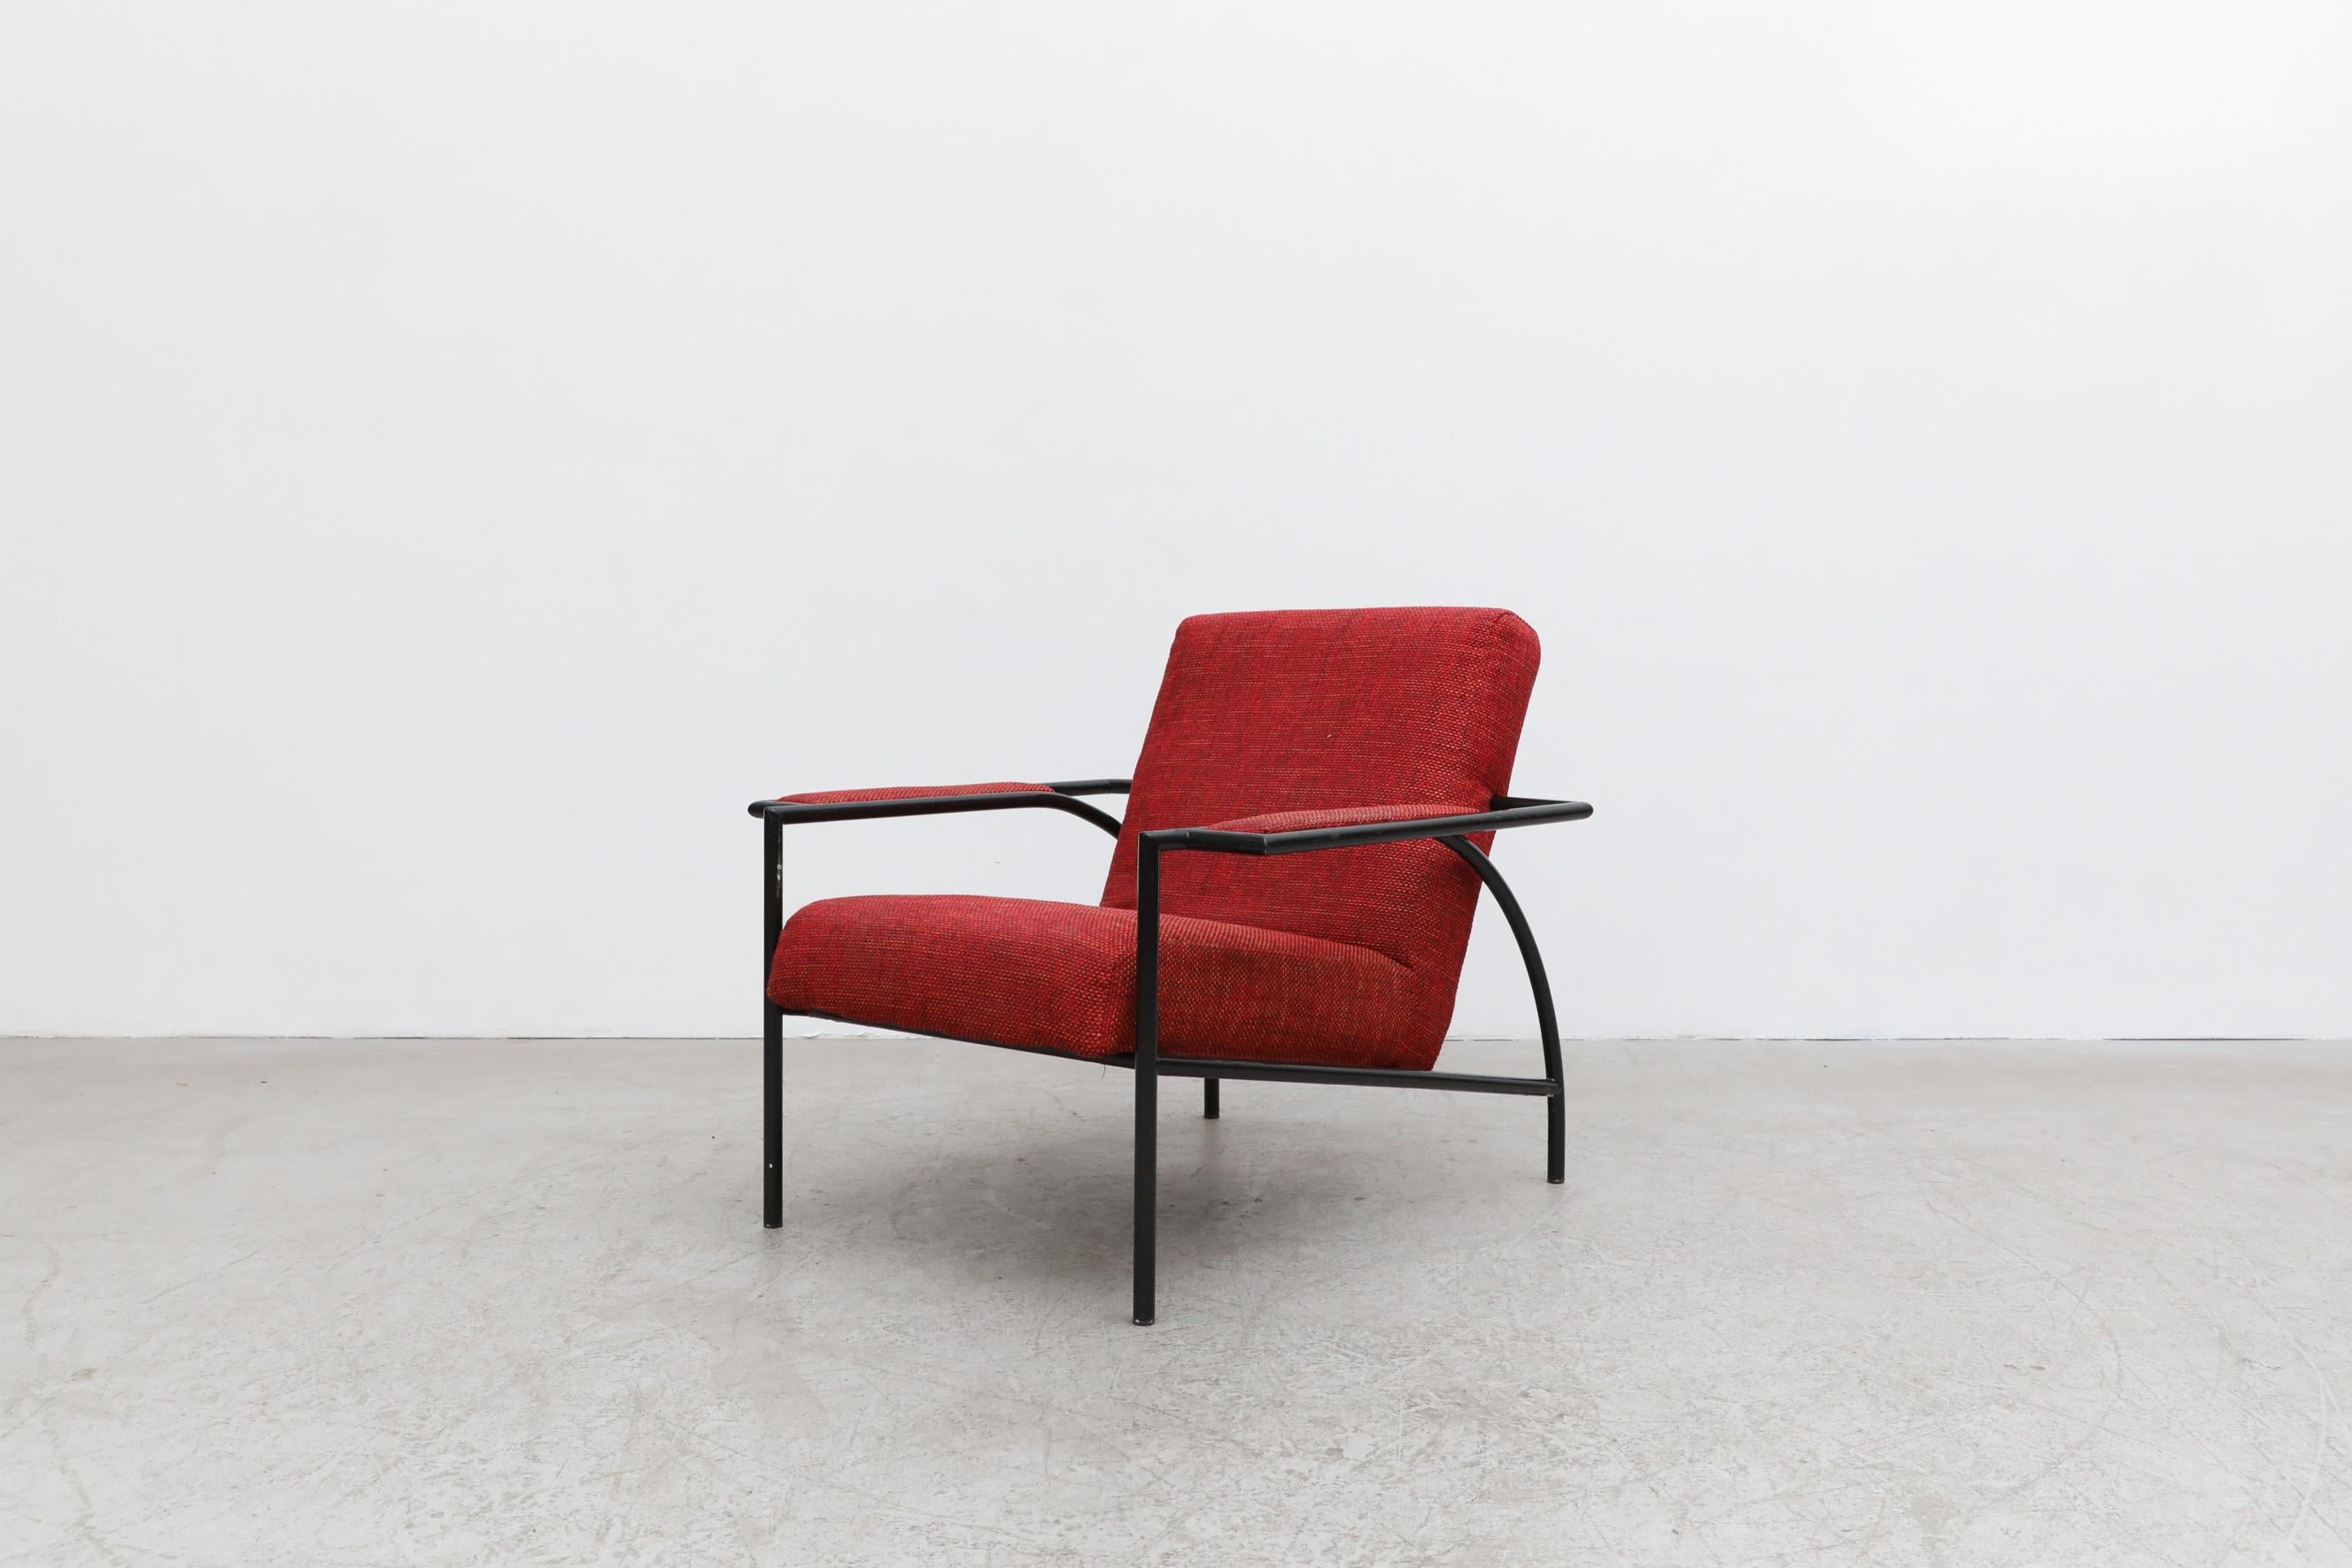 Enameled Gerard Vollenbrock Red Lounge Chair with Black Frame for Gelderland, 1980's For Sale